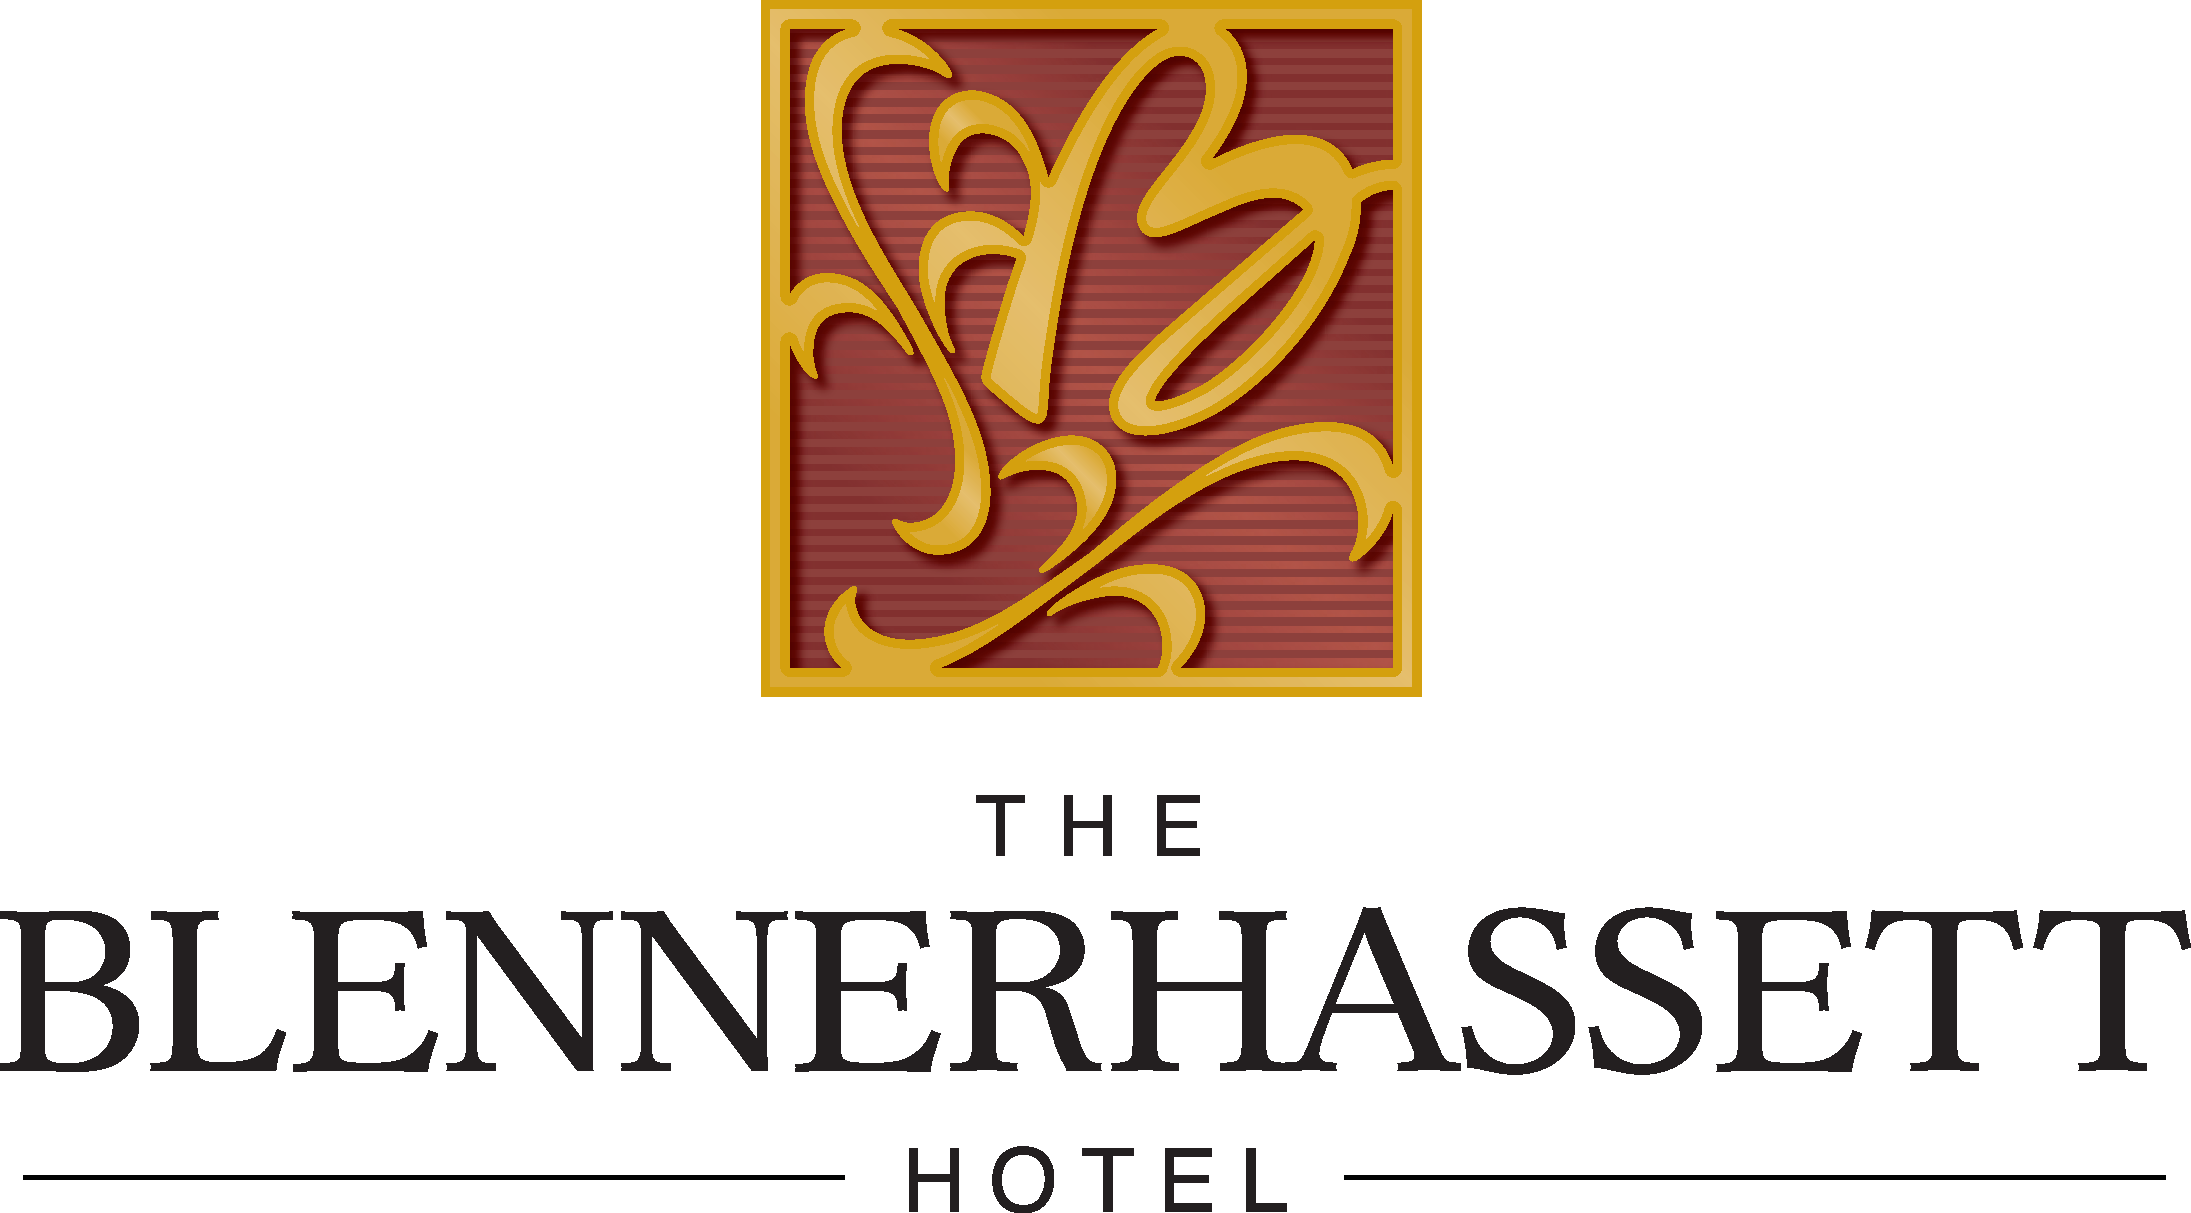 The Blennerhassett Hotel